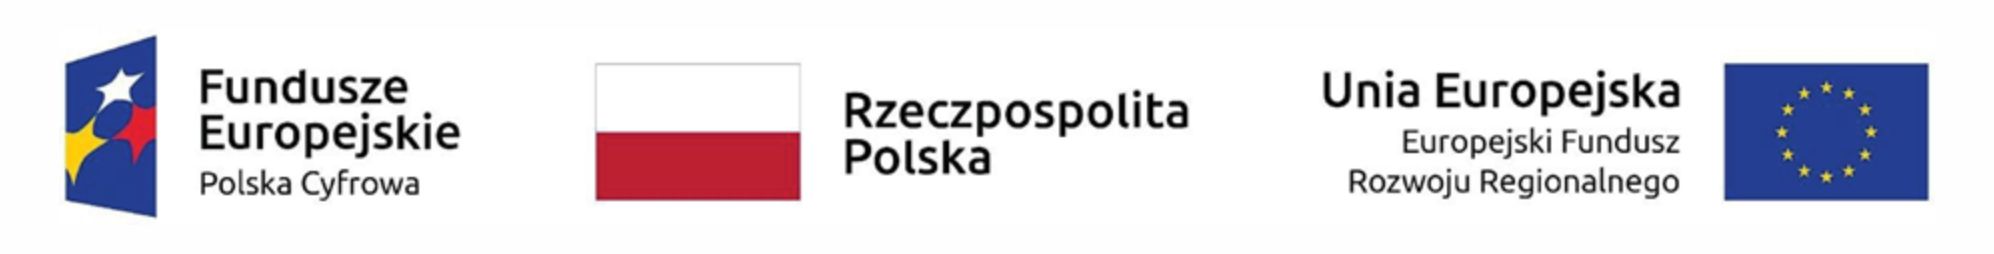 Polska cyfrowa - logo